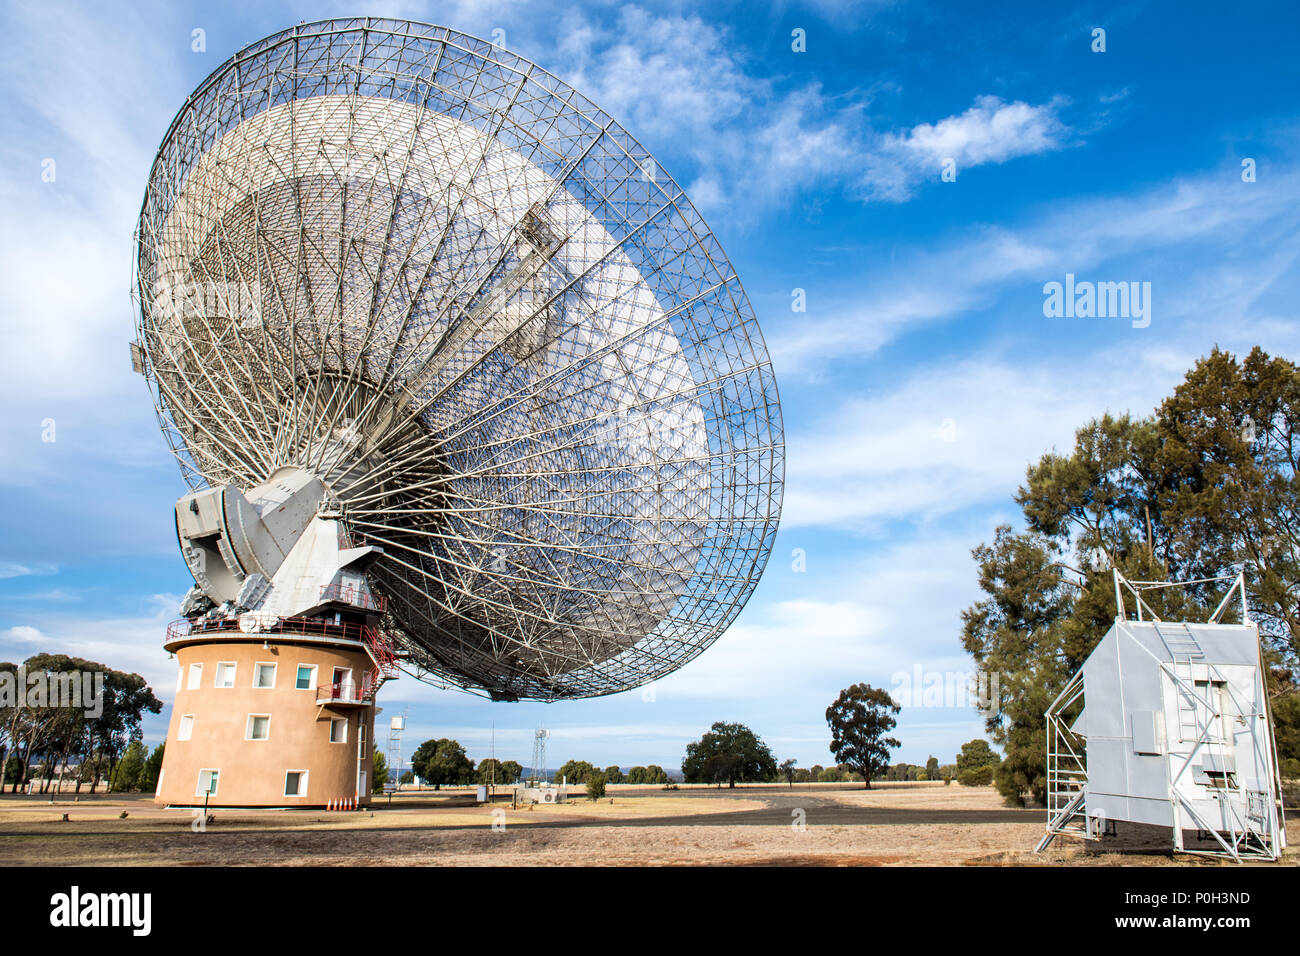 Parkes Radio Teleskop ist eine 64-m Durchmesser Parabolantenne für Radioastronomie verwendet. Dieses Teleskop hat live Bilder zum Fernsehen, wenn man 1 auf dem Mond in Apollo 11 am 21. Juli 1969 - Parkes landete, New South Wales, Australien Stockfoto